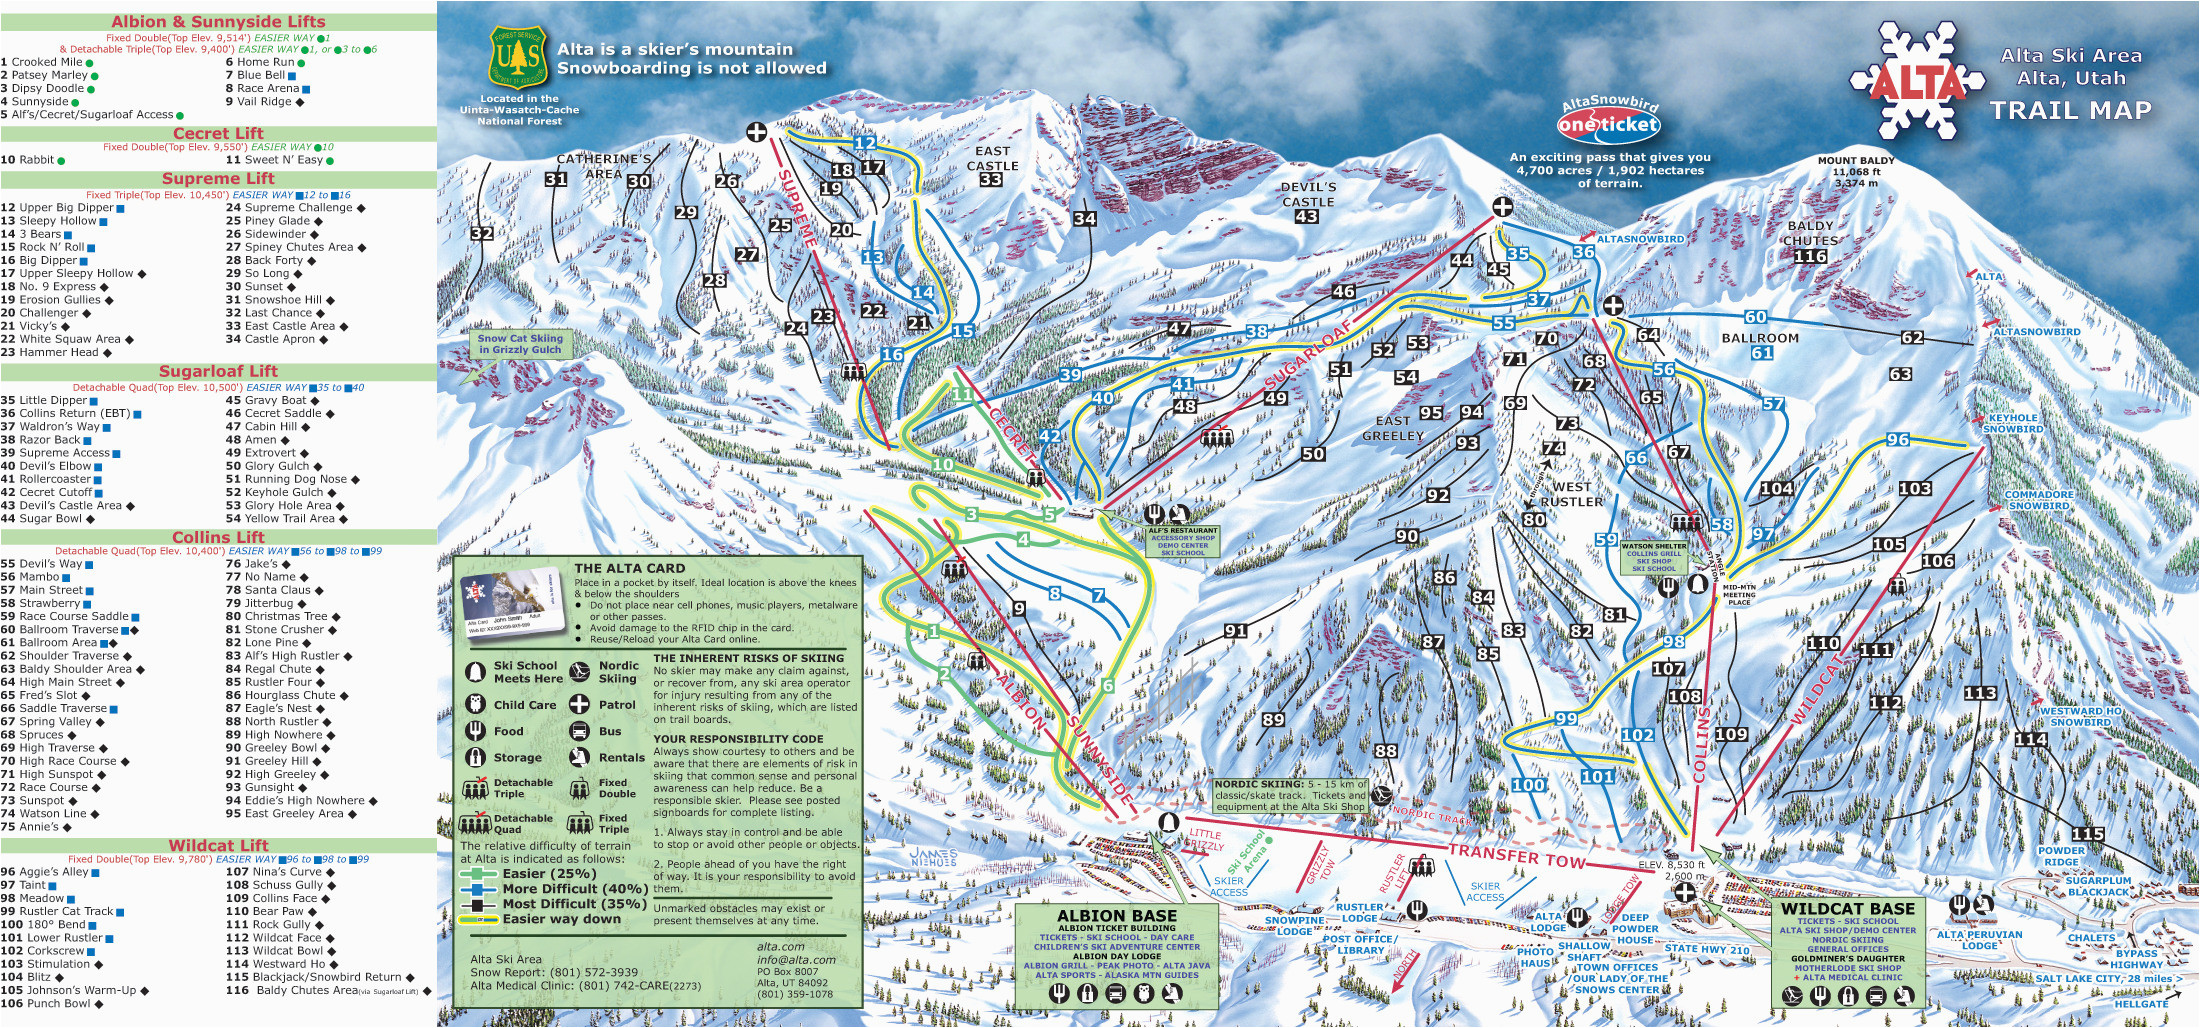 Map Of Ski Resorts Colorado Colorado Ski Areas Map Luxury Colorado Ski Resorts By Elevation Of Map Of Ski Resorts Colorado 1 